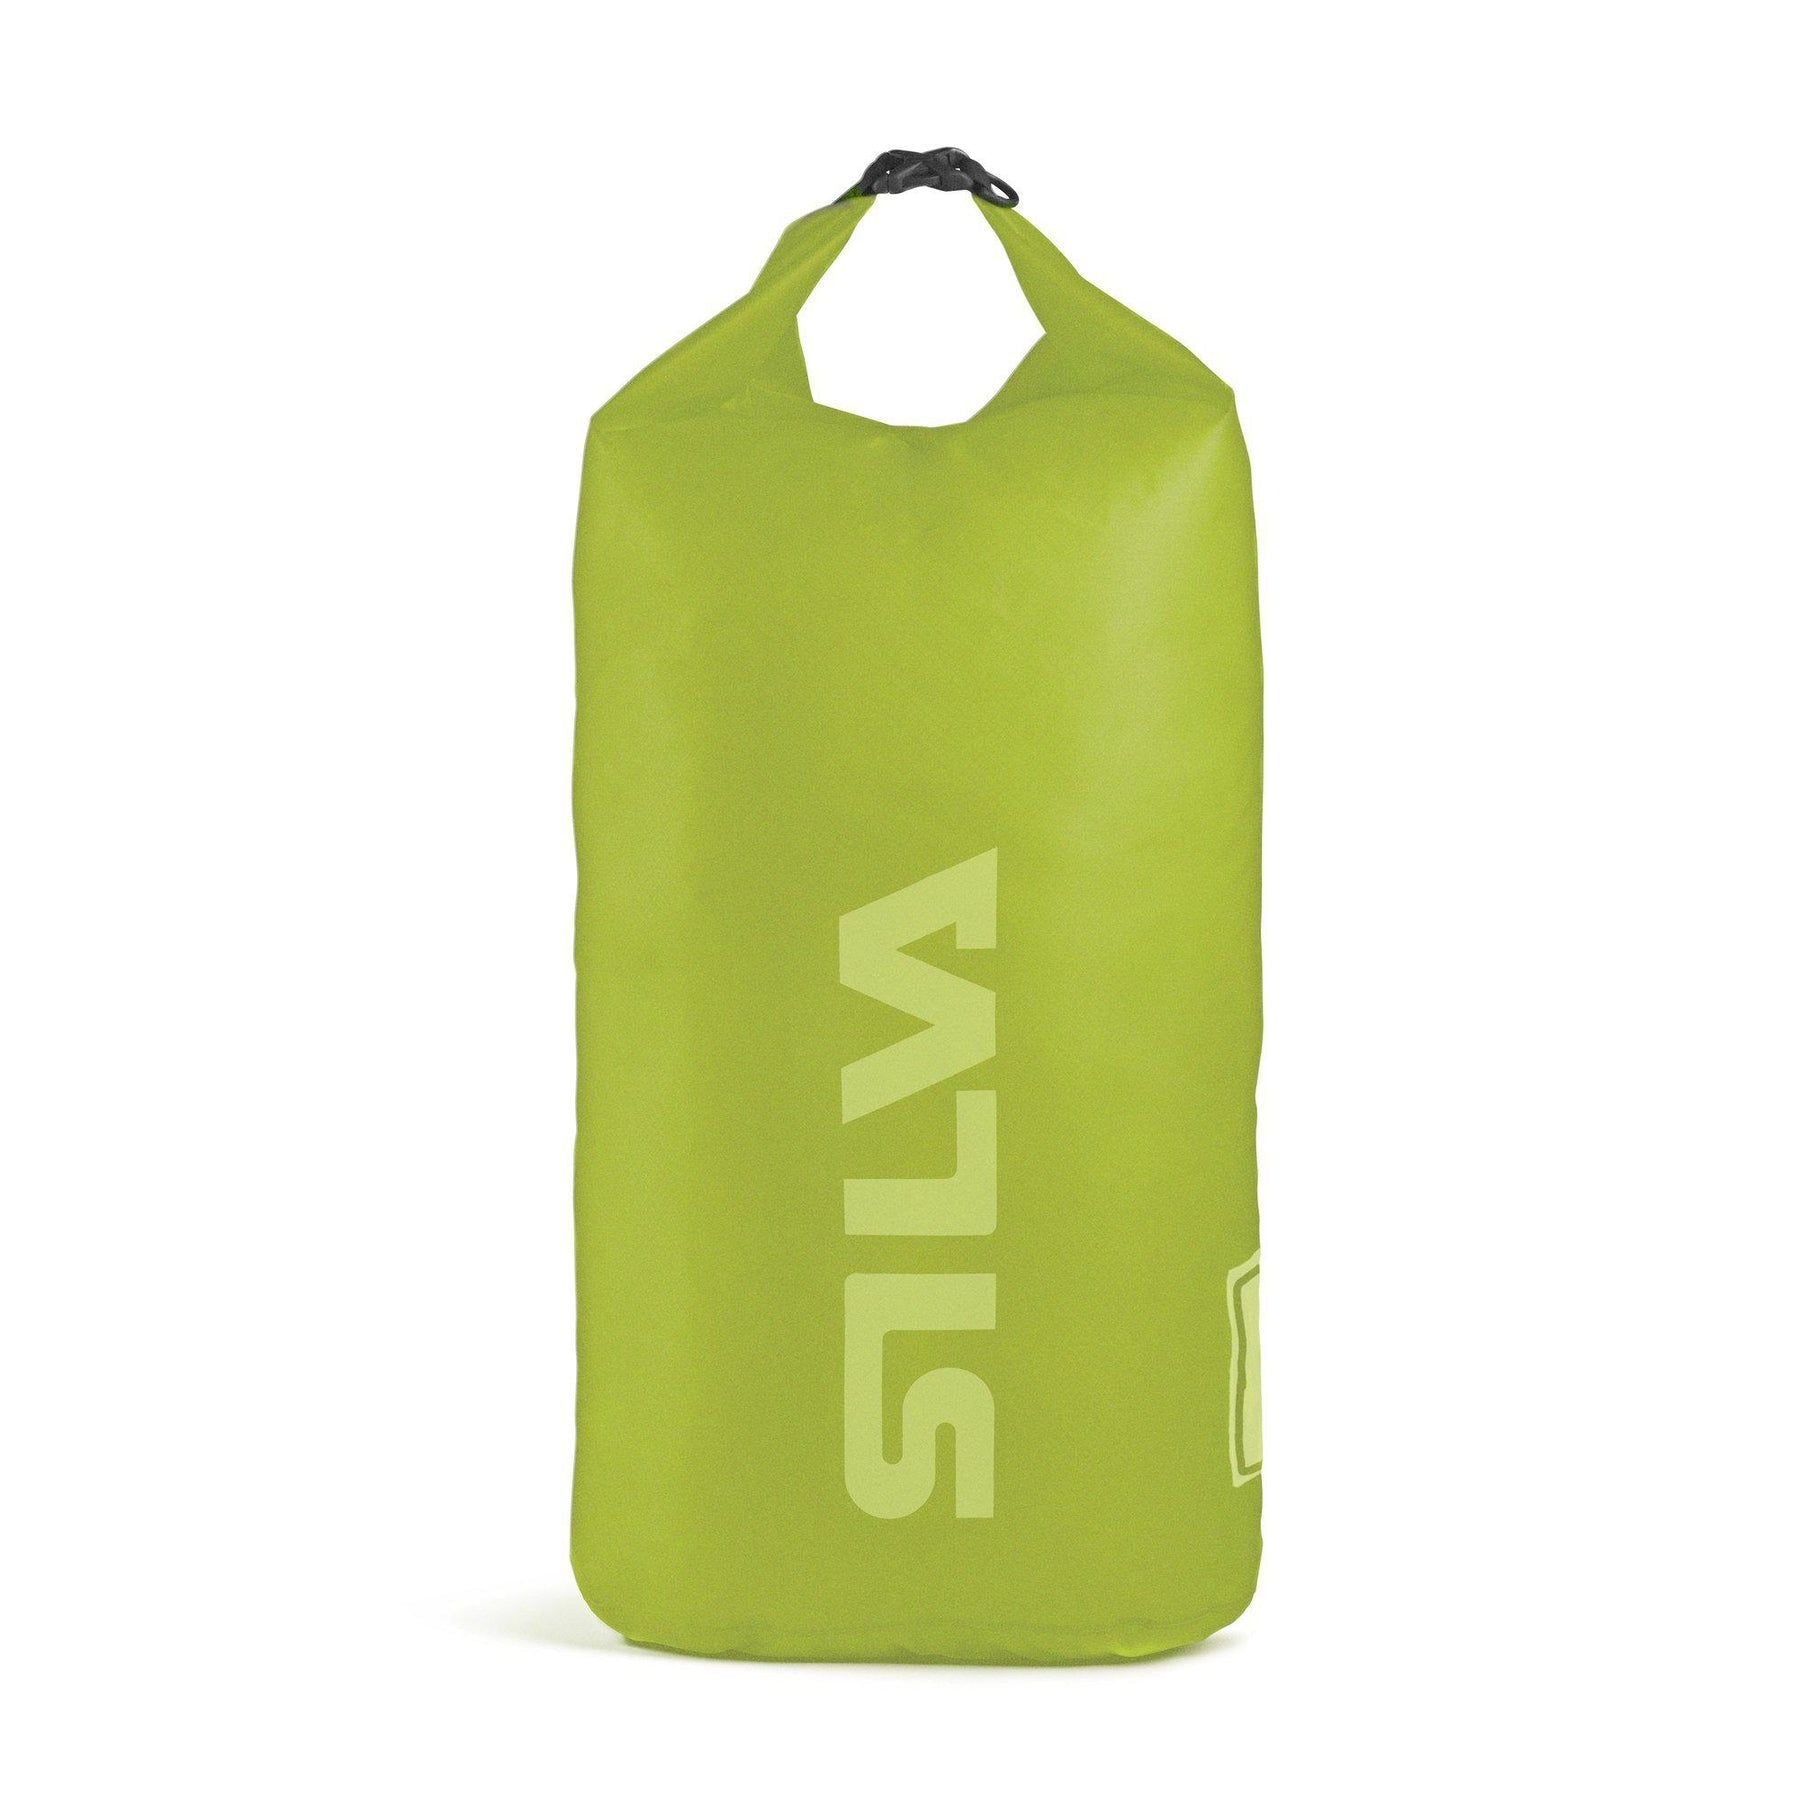 Silva 70D Waterproof Dry Bag, 24 L